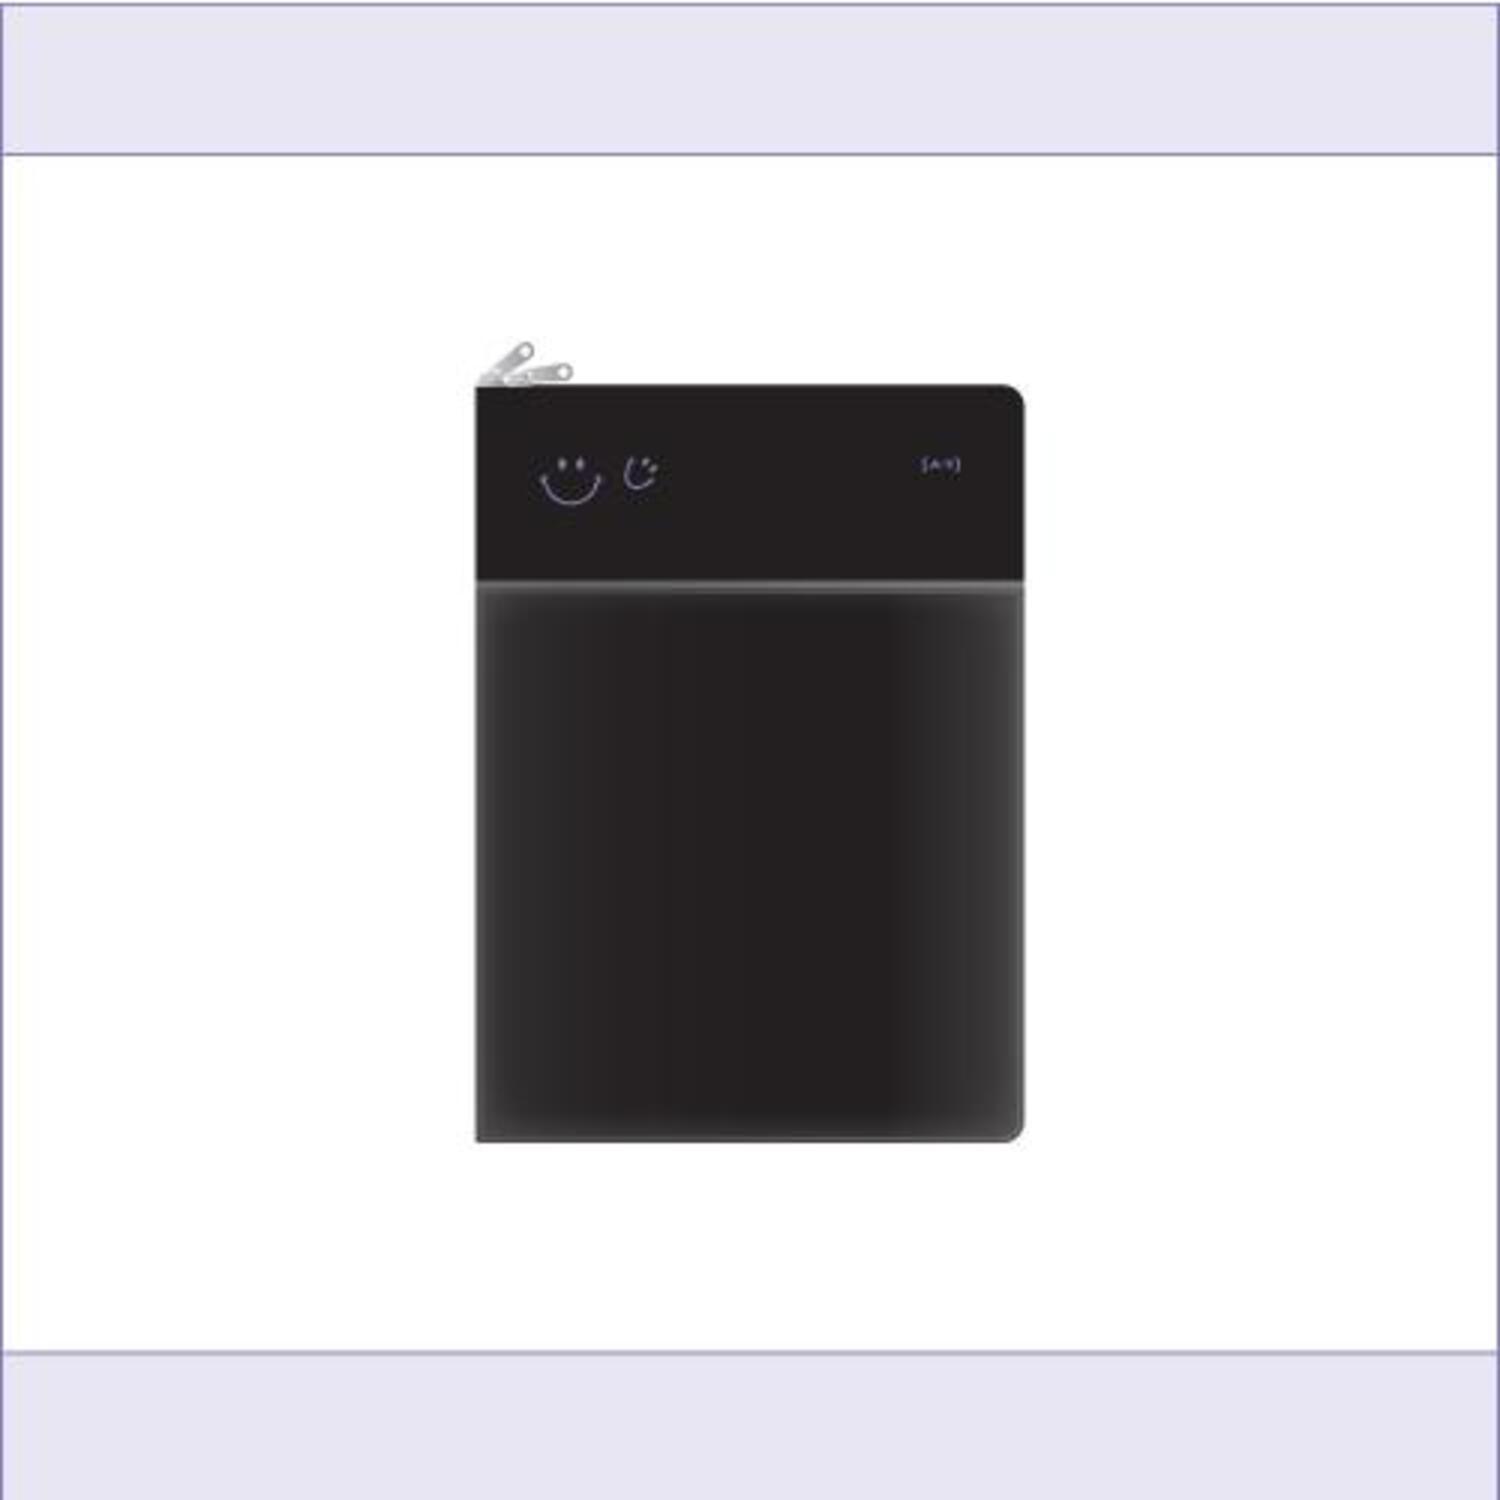 김성규(KIM SUNG KYU) [ㅅㄱ] Official MD - 태블릿 PC 파우치 Tablet PC Pouch